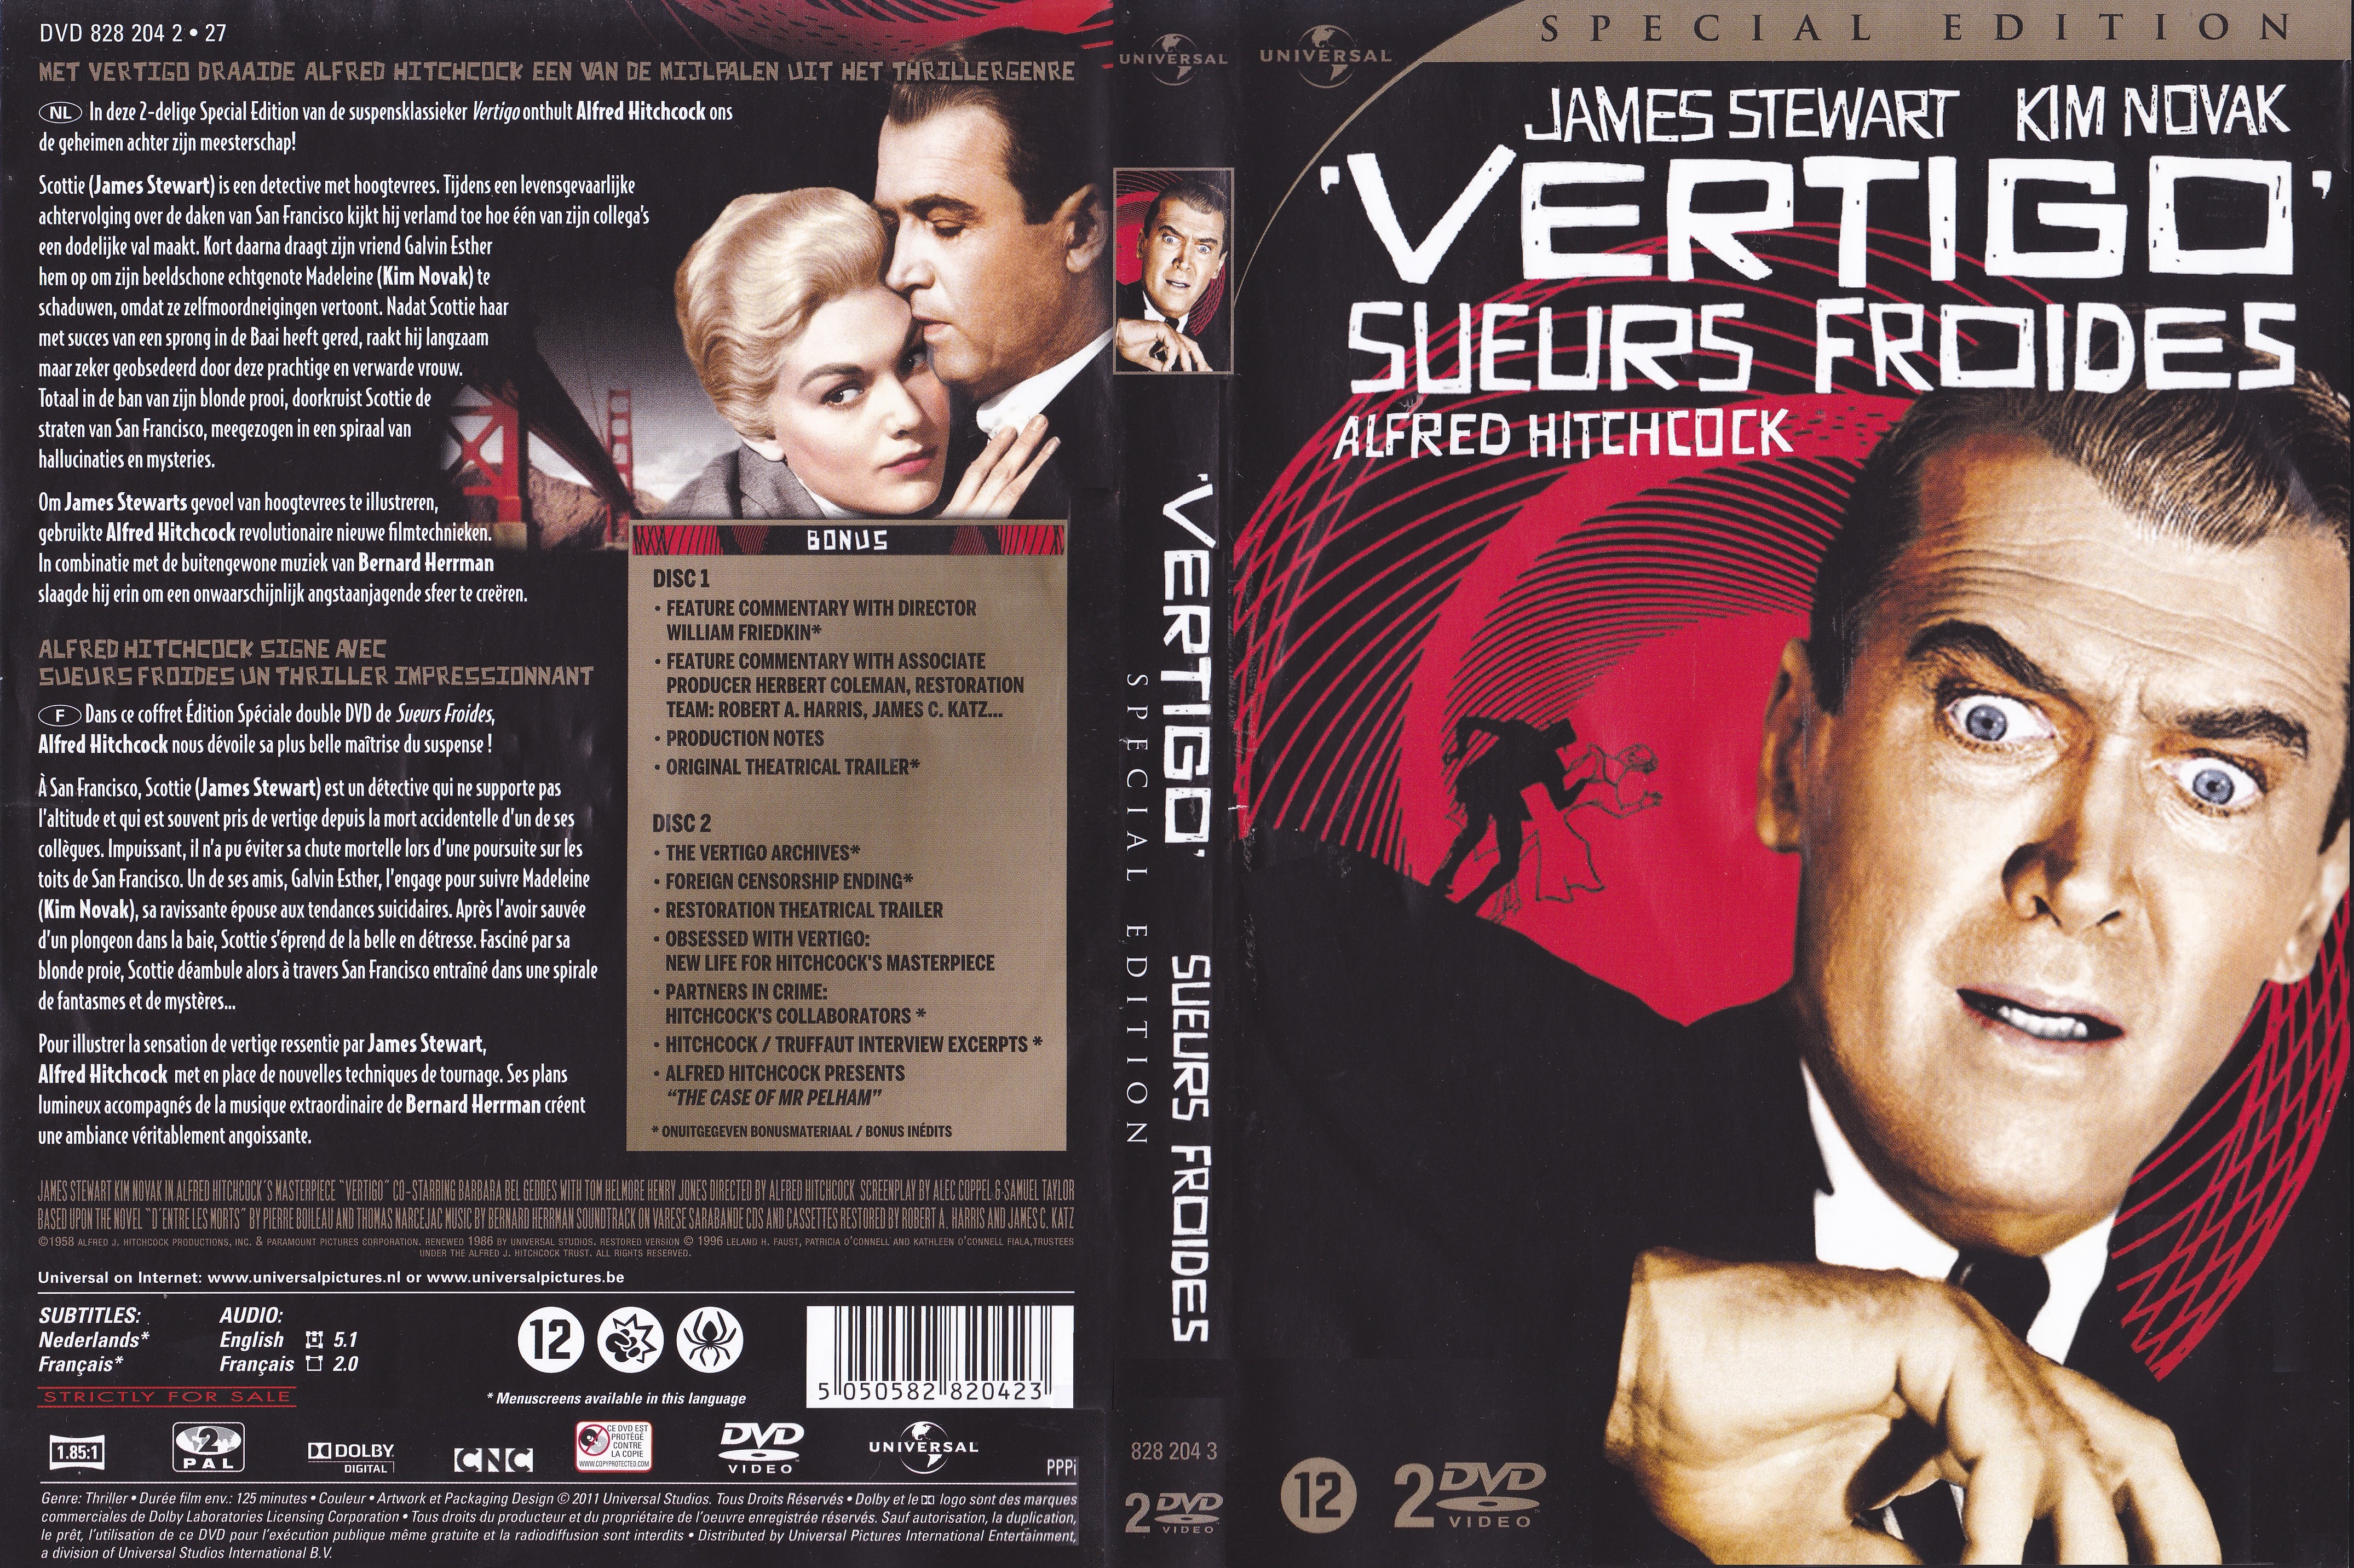 Jaquette DVD Sueurs Froides v7